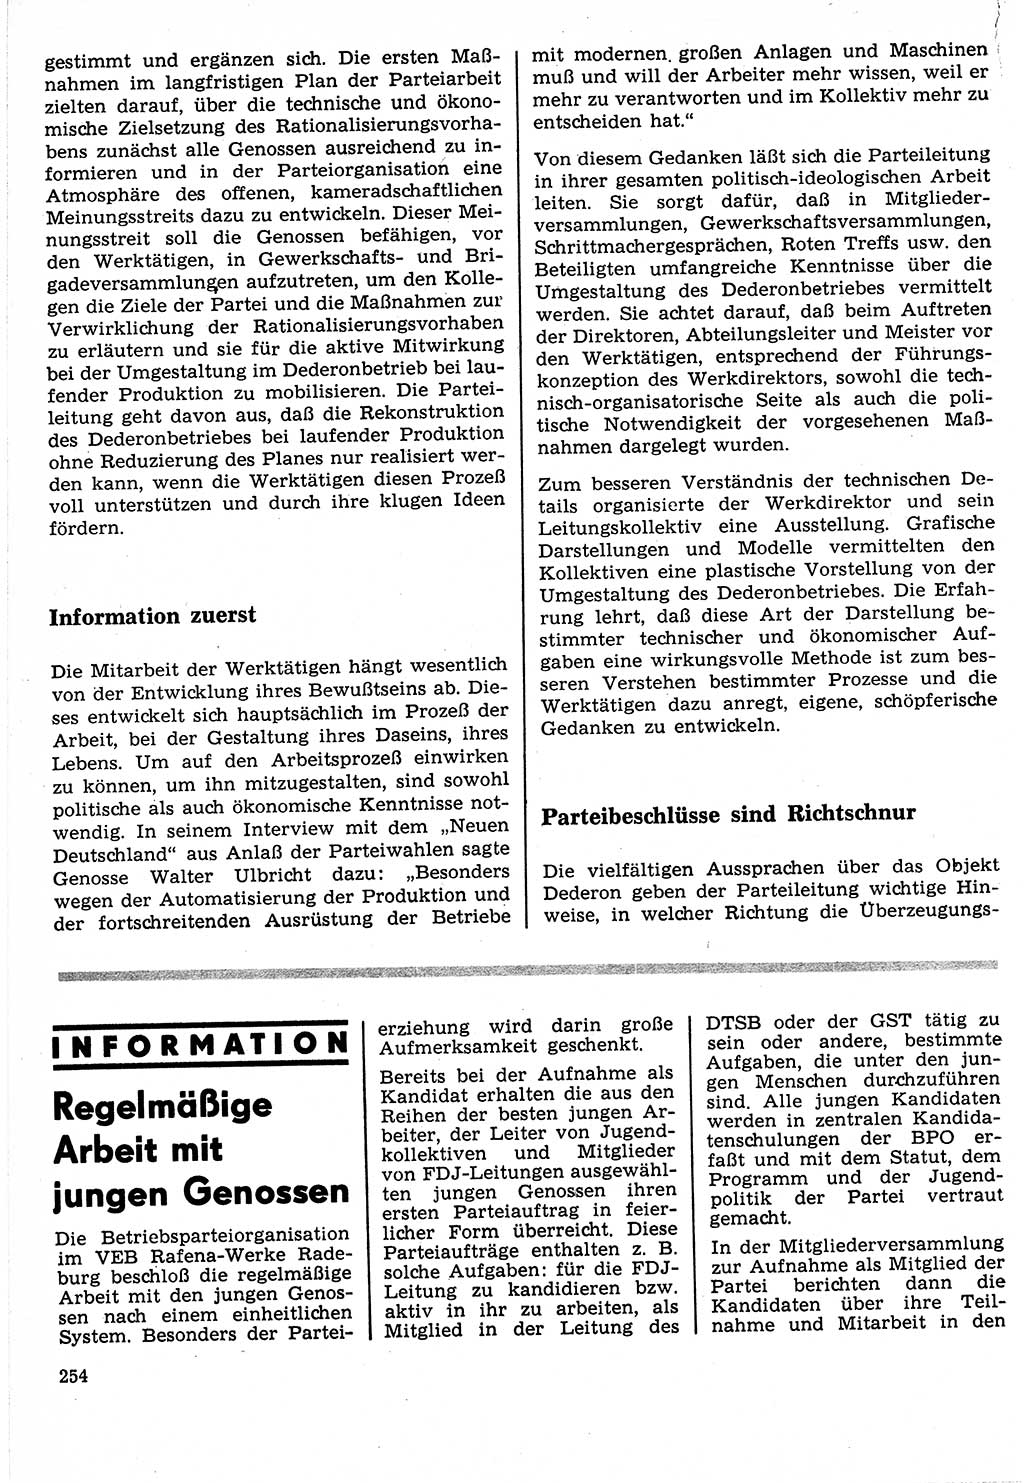 Neuer Weg (NW), Organ des Zentralkomitees (ZK) der SED (Sozialistische Einheitspartei Deutschlands) für Fragen des Parteilebens, 24. Jahrgang [Deutsche Demokratische Republik (DDR)] 1969, Seite 254 (NW ZK SED DDR 1969, S. 254)